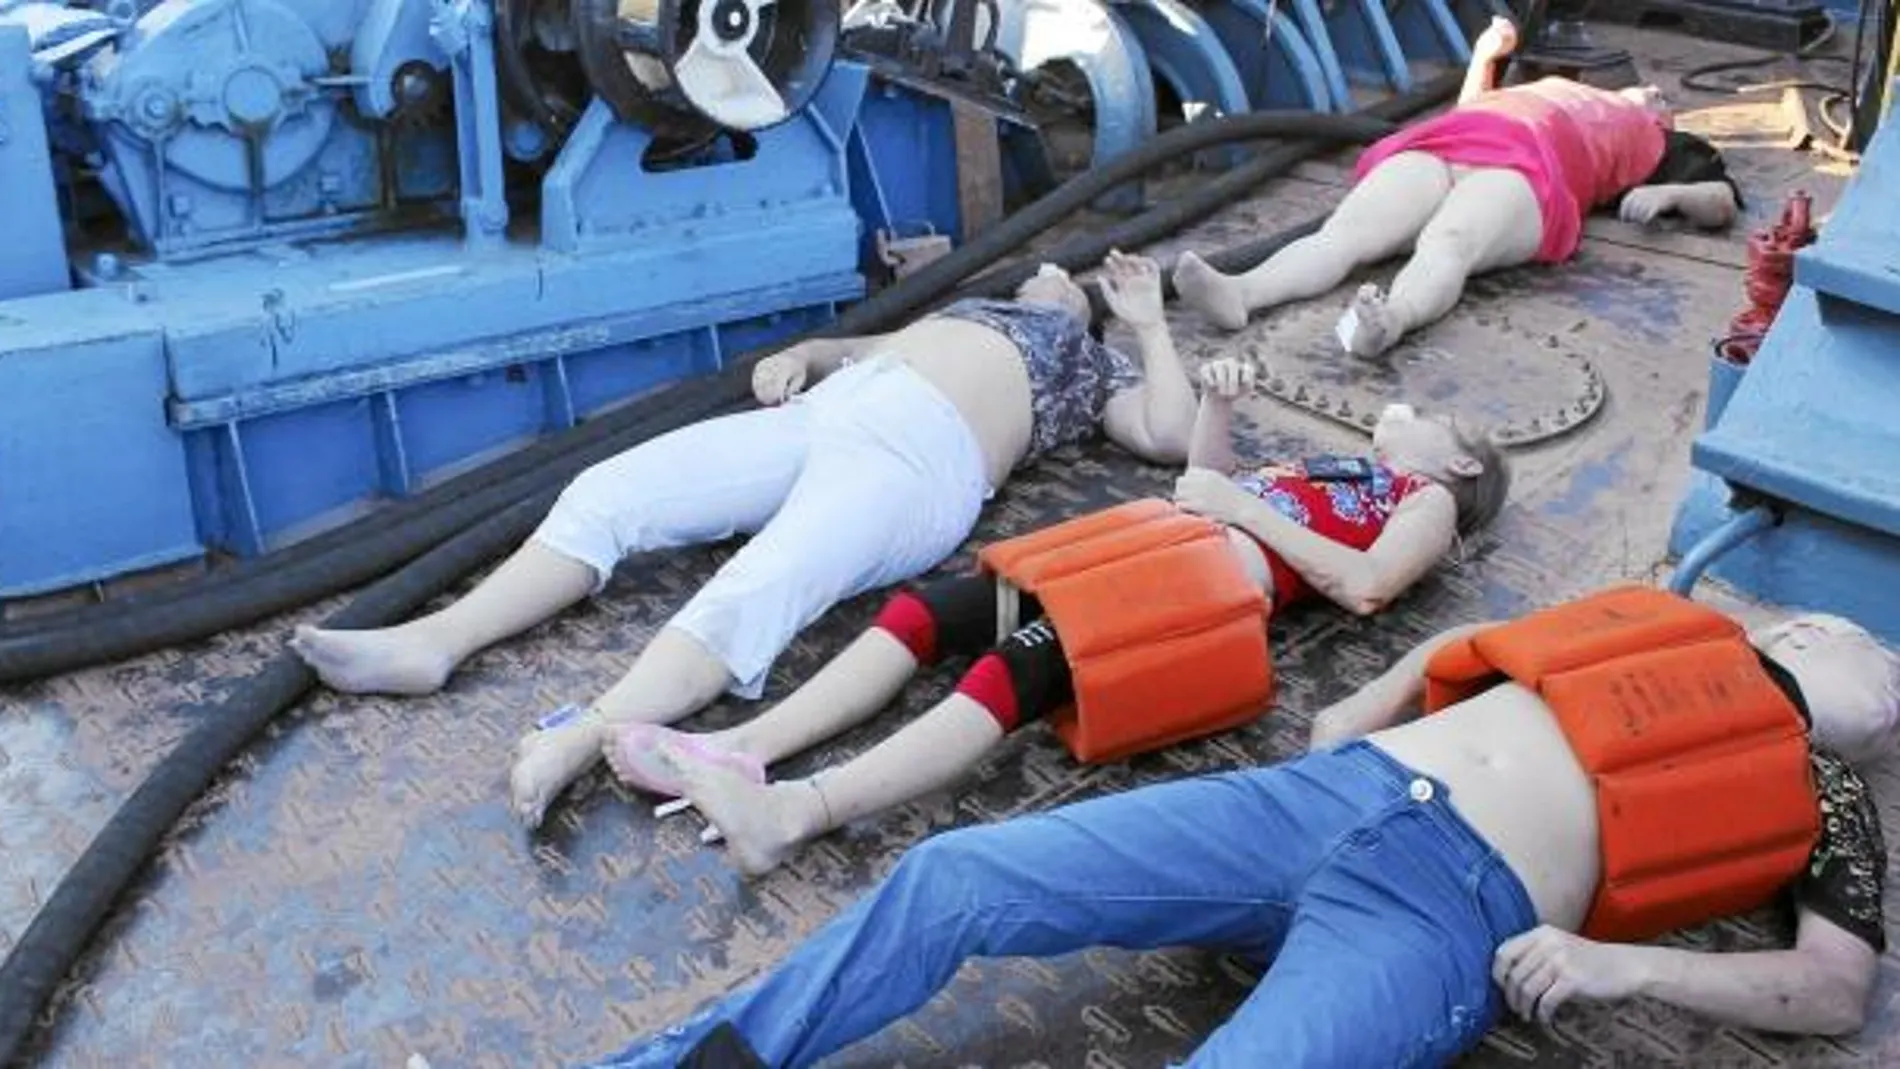 Imagen facilitada por el Ministerio de Emergencias de Tatarstán que muestra los cadáveres de cuatro víctimas del naufragio